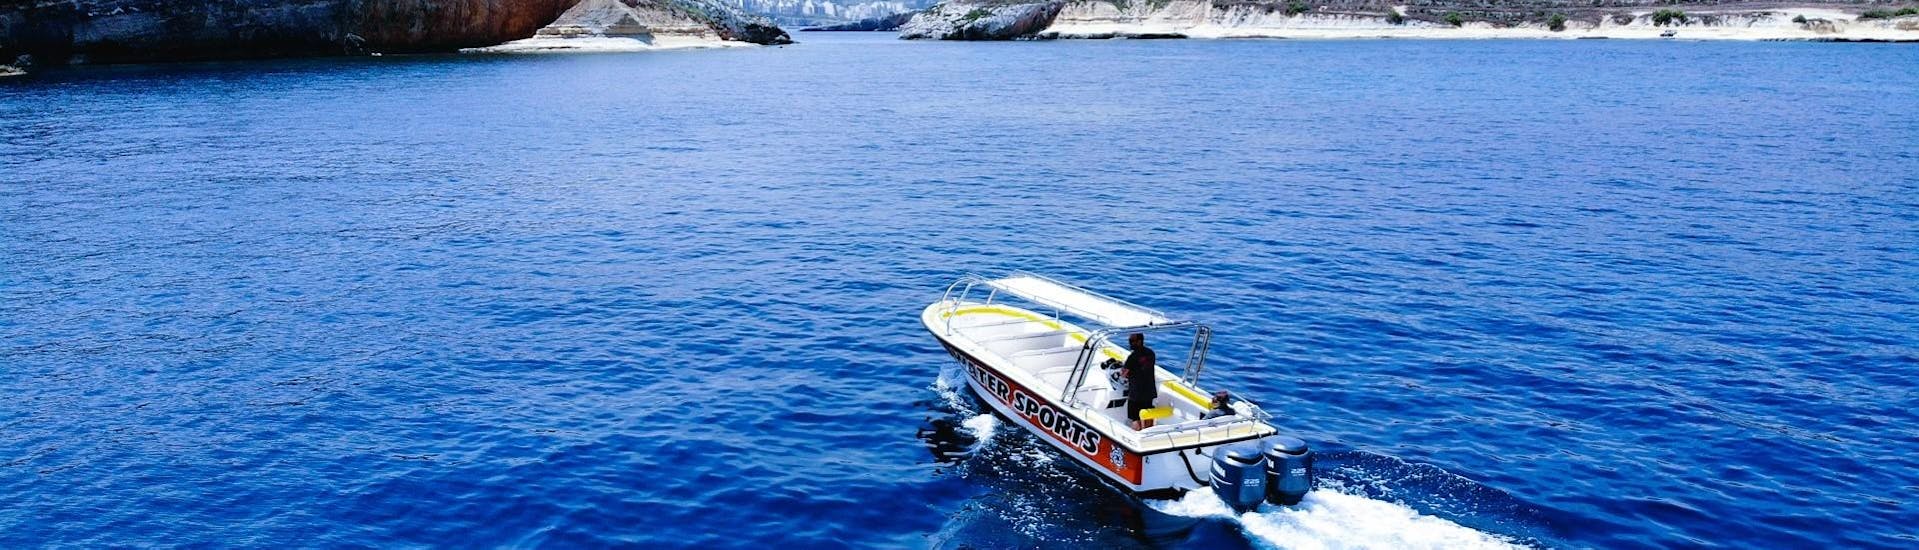 La barca di Whyknot Cruises Malta sta navigando intorno all'isola di Malta.